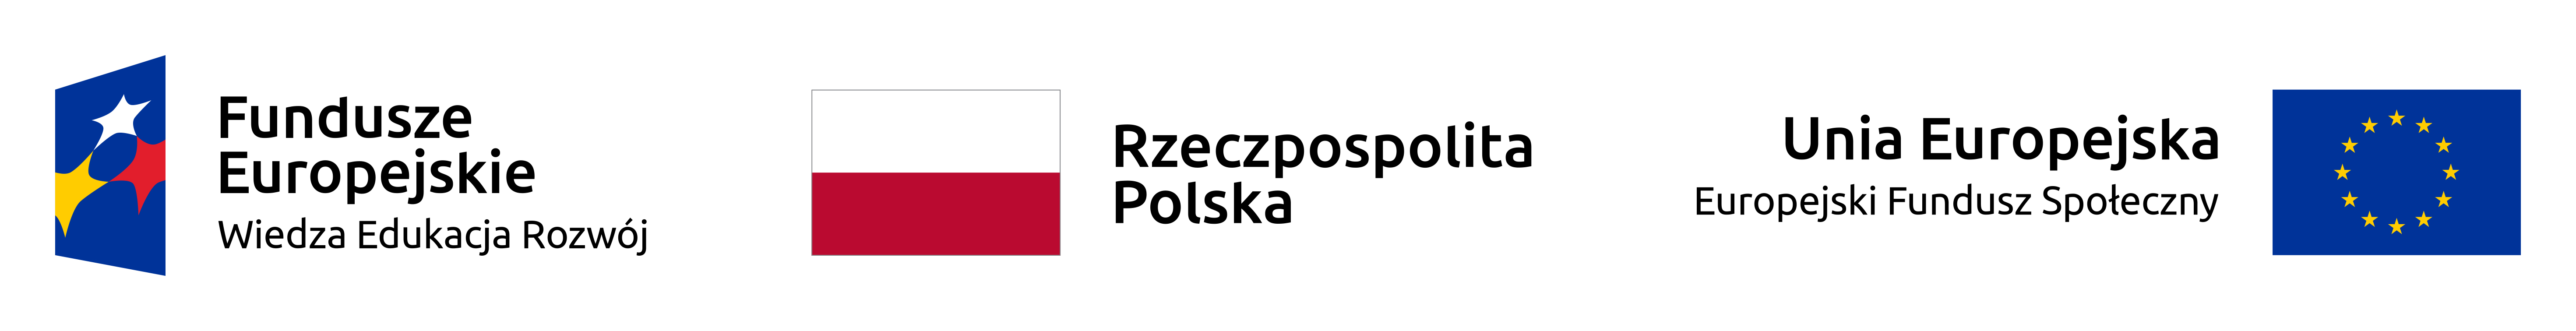 Logo Funduszy Europejskich, Flaga Rzeczpospolita Polska, Unia Europejska Flaga napis Europejski Fundusz Społeczny